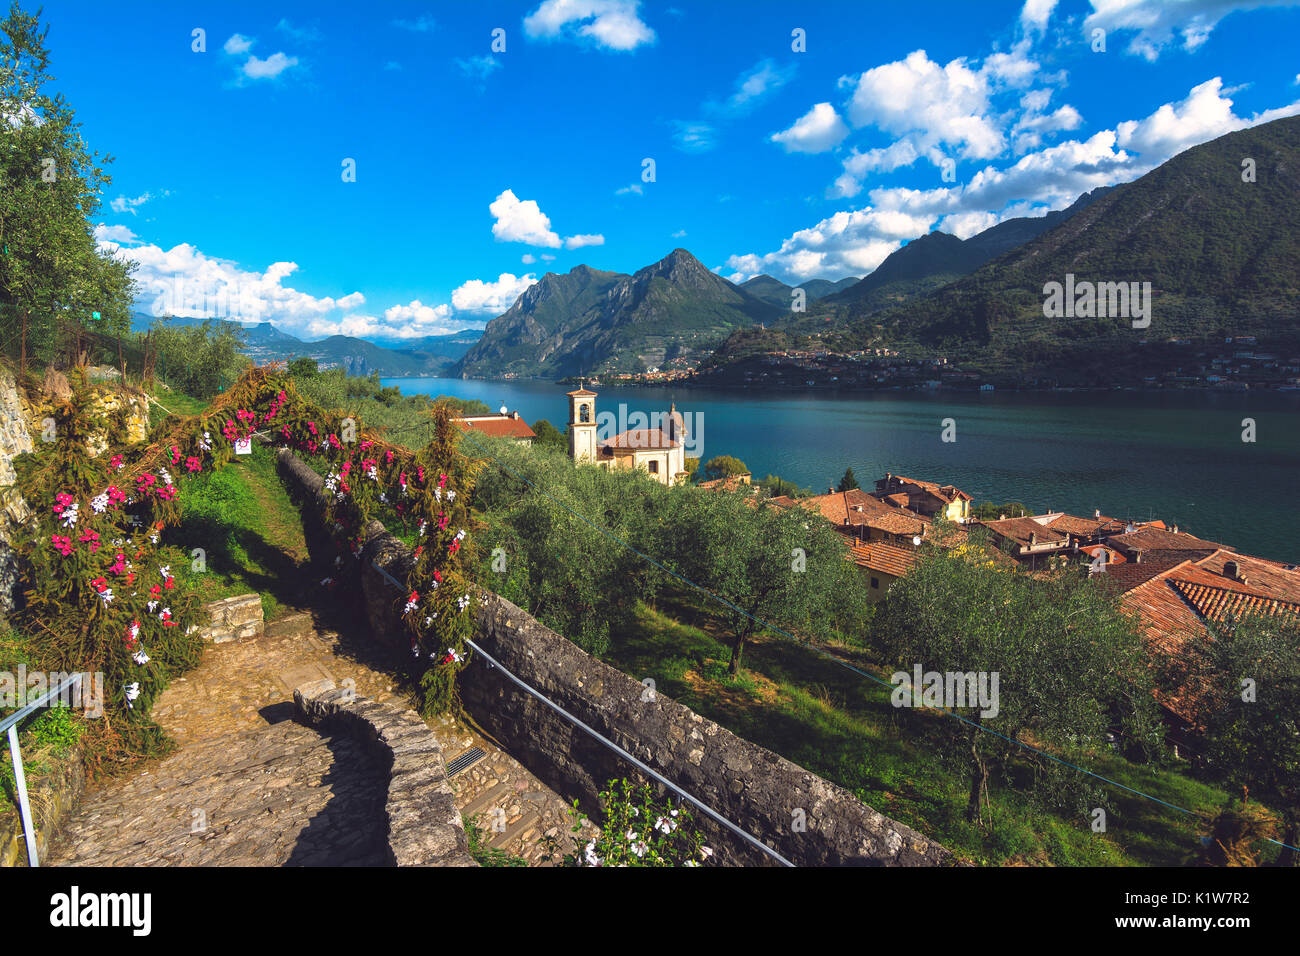 Carzano, Montisola, Brescia province, Italy, Lombardy district, Europe. Stock Photo